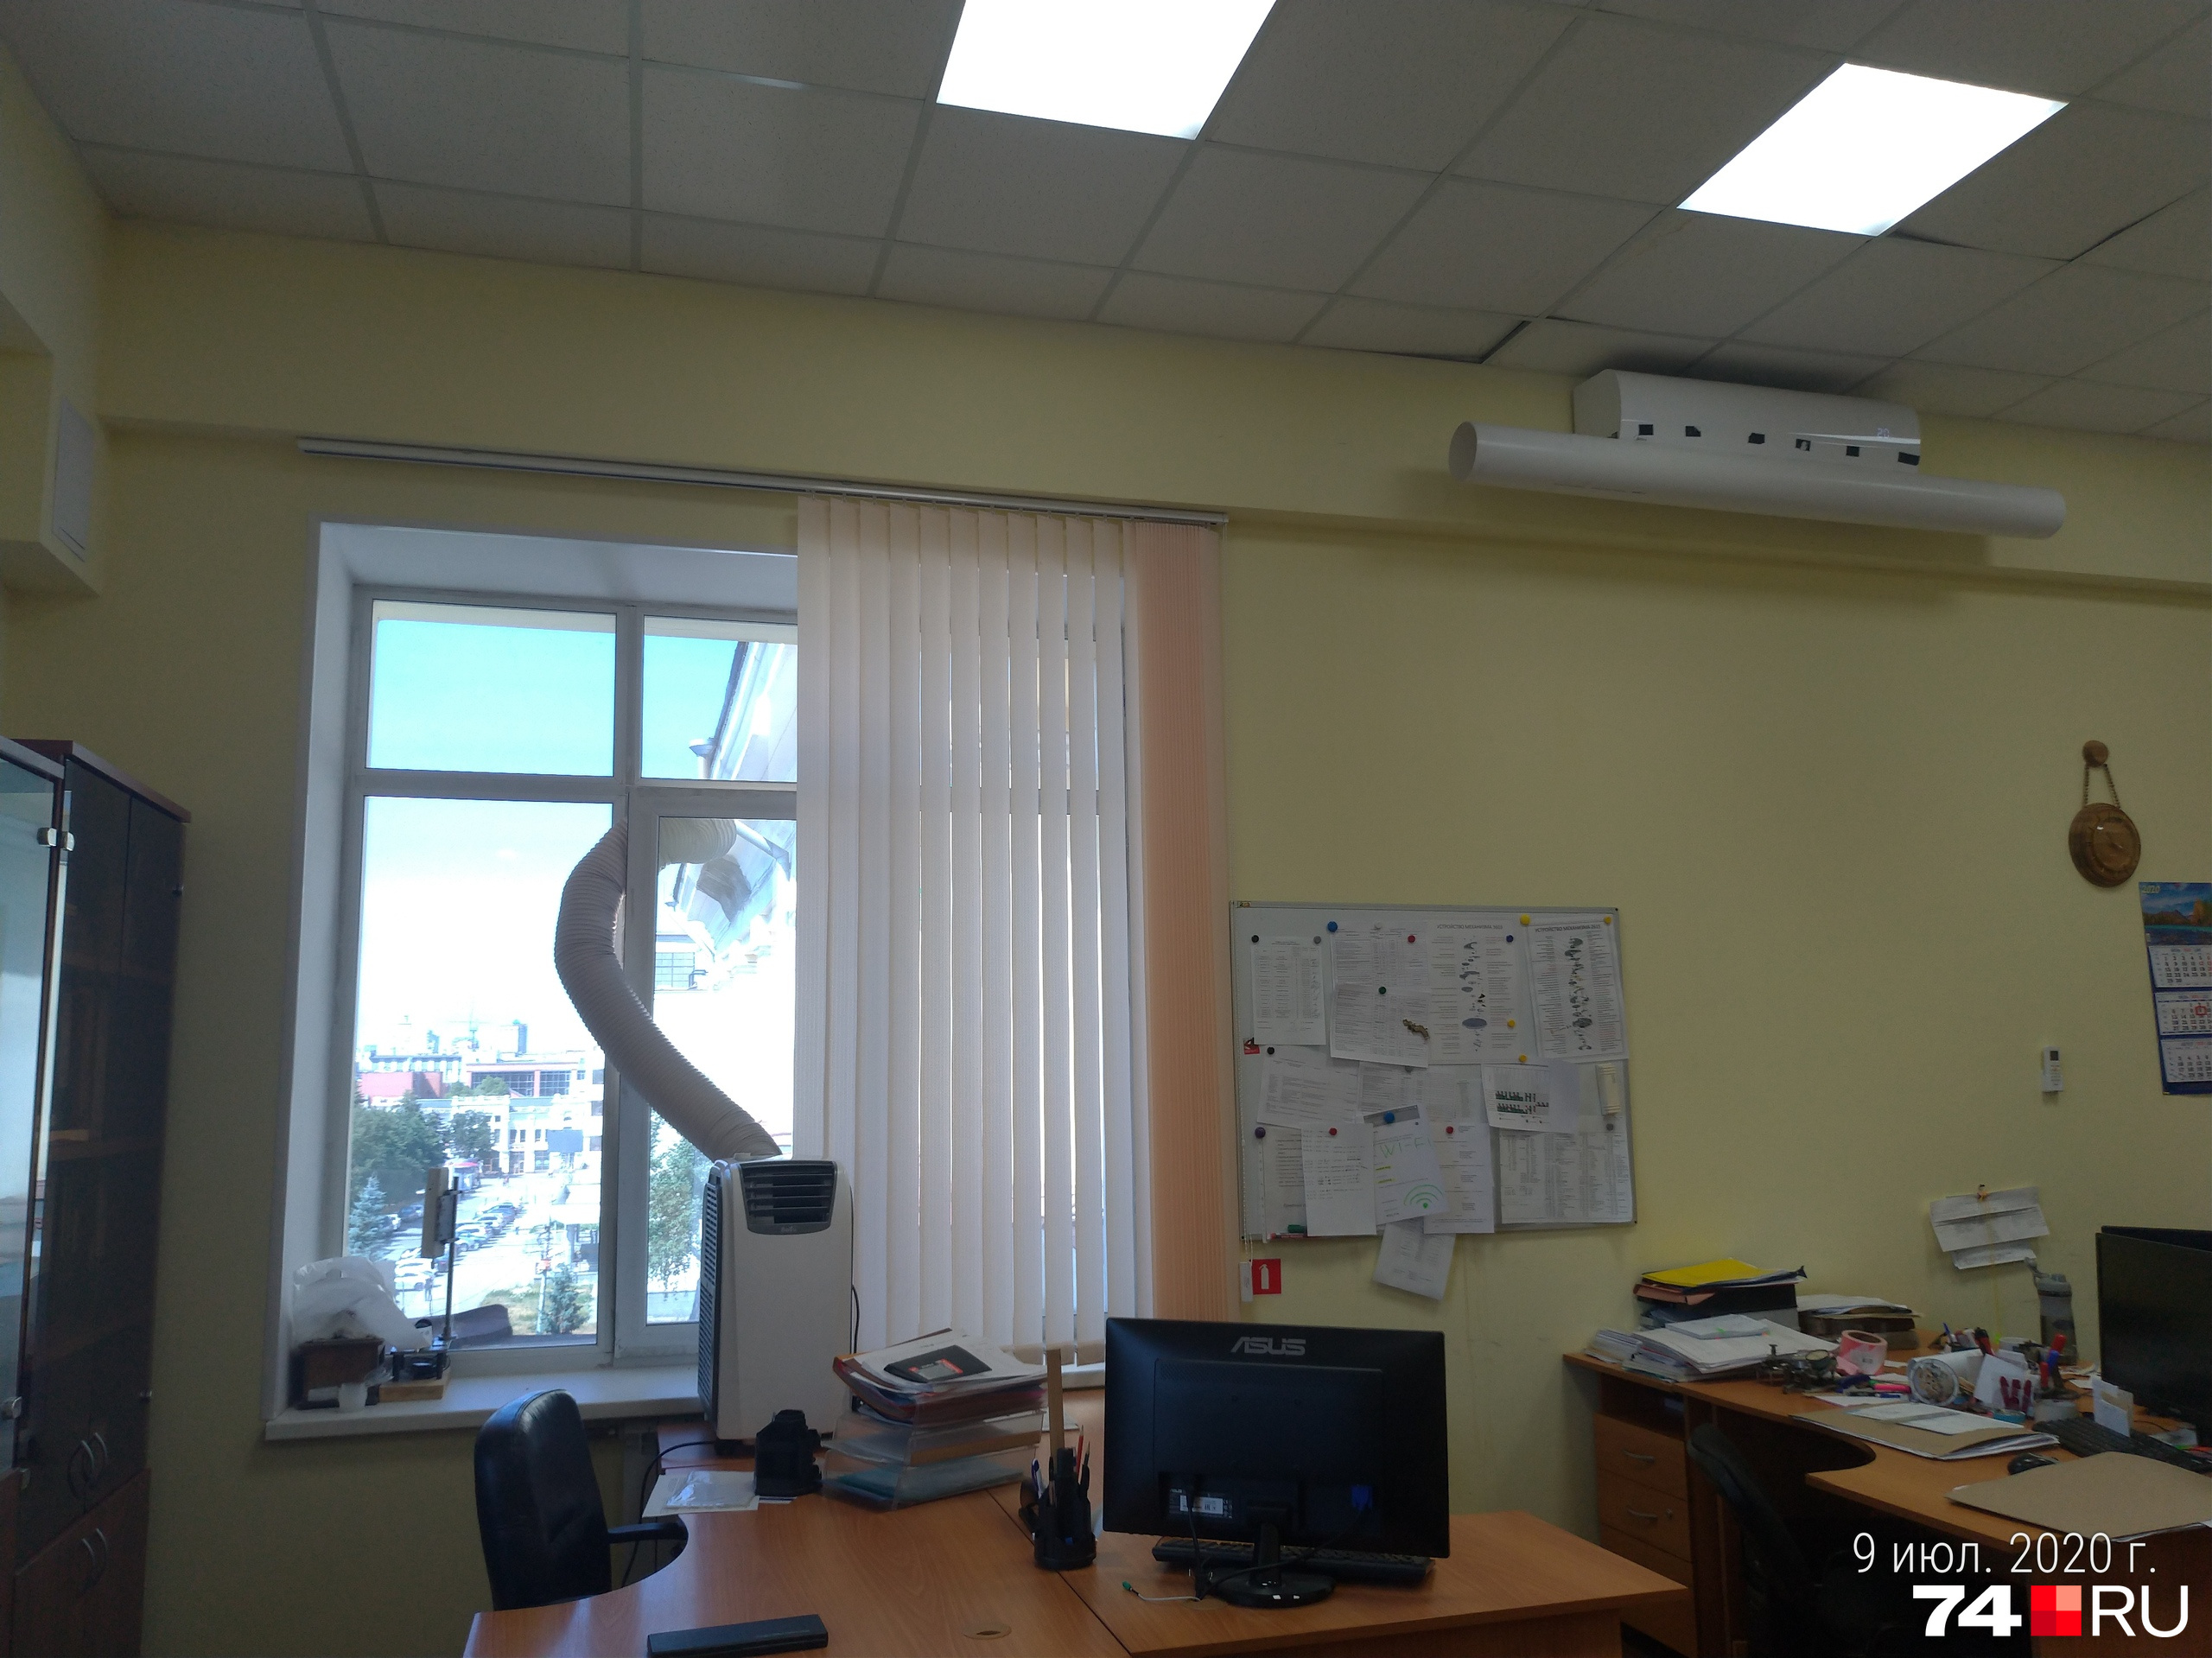 Как изобретательны офисные работники в Челябинске!